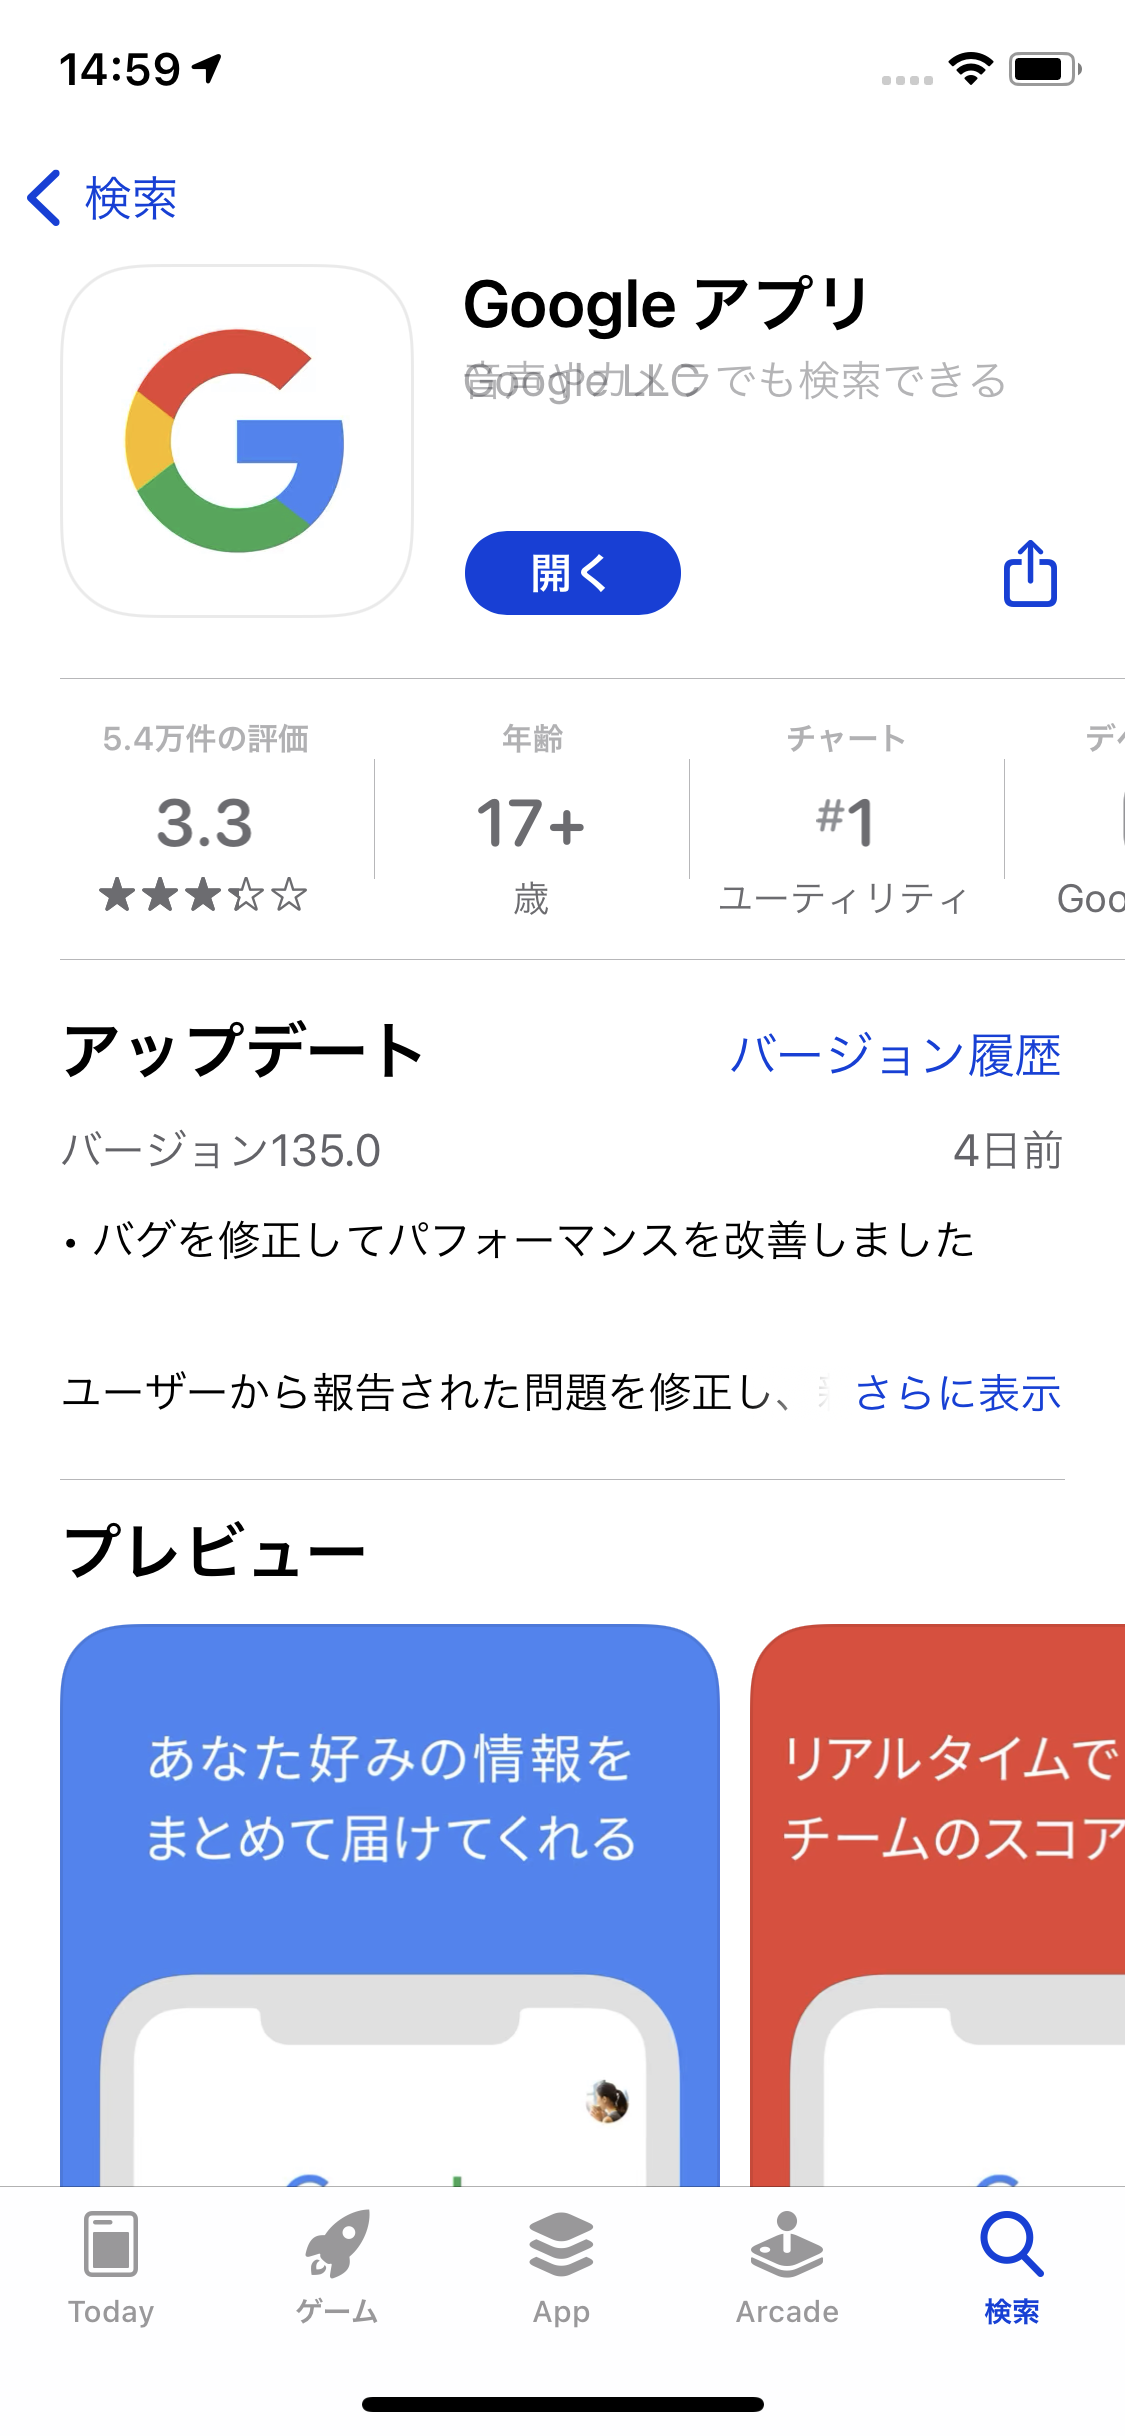 すばやく検索 レンズ起動 Googleのウィジェットが超便利 Iphone Tips Engadget 日本版